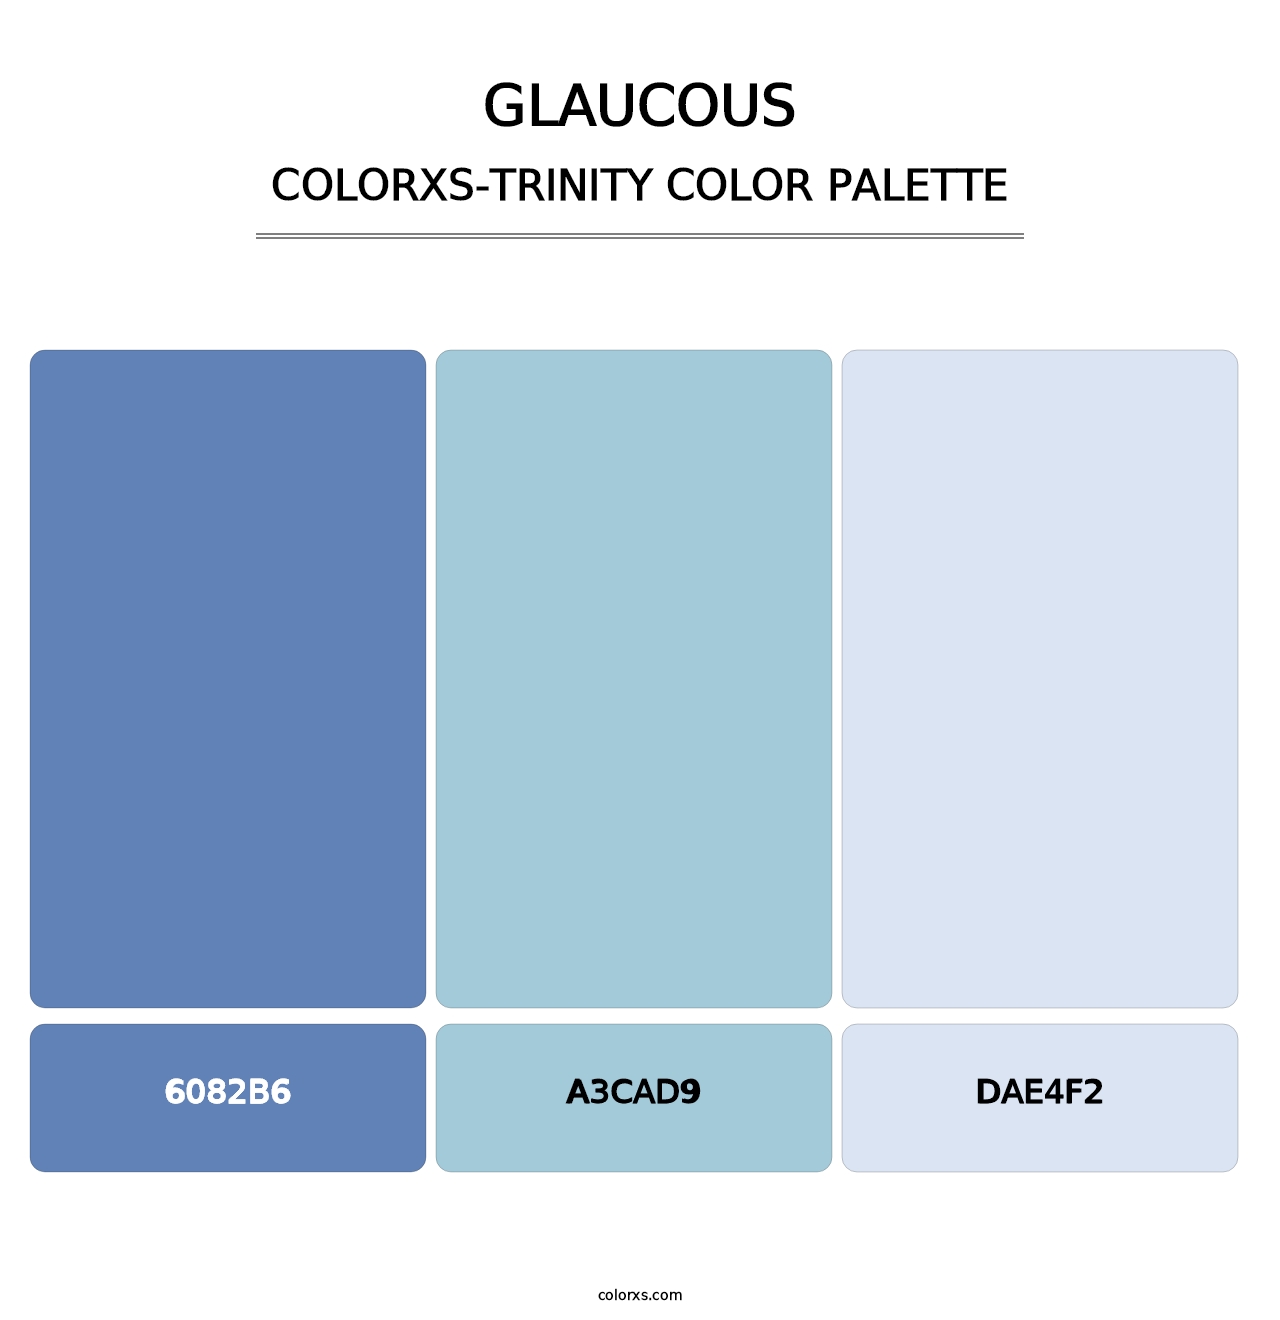 Glaucous - Colorxs Trinity Palette